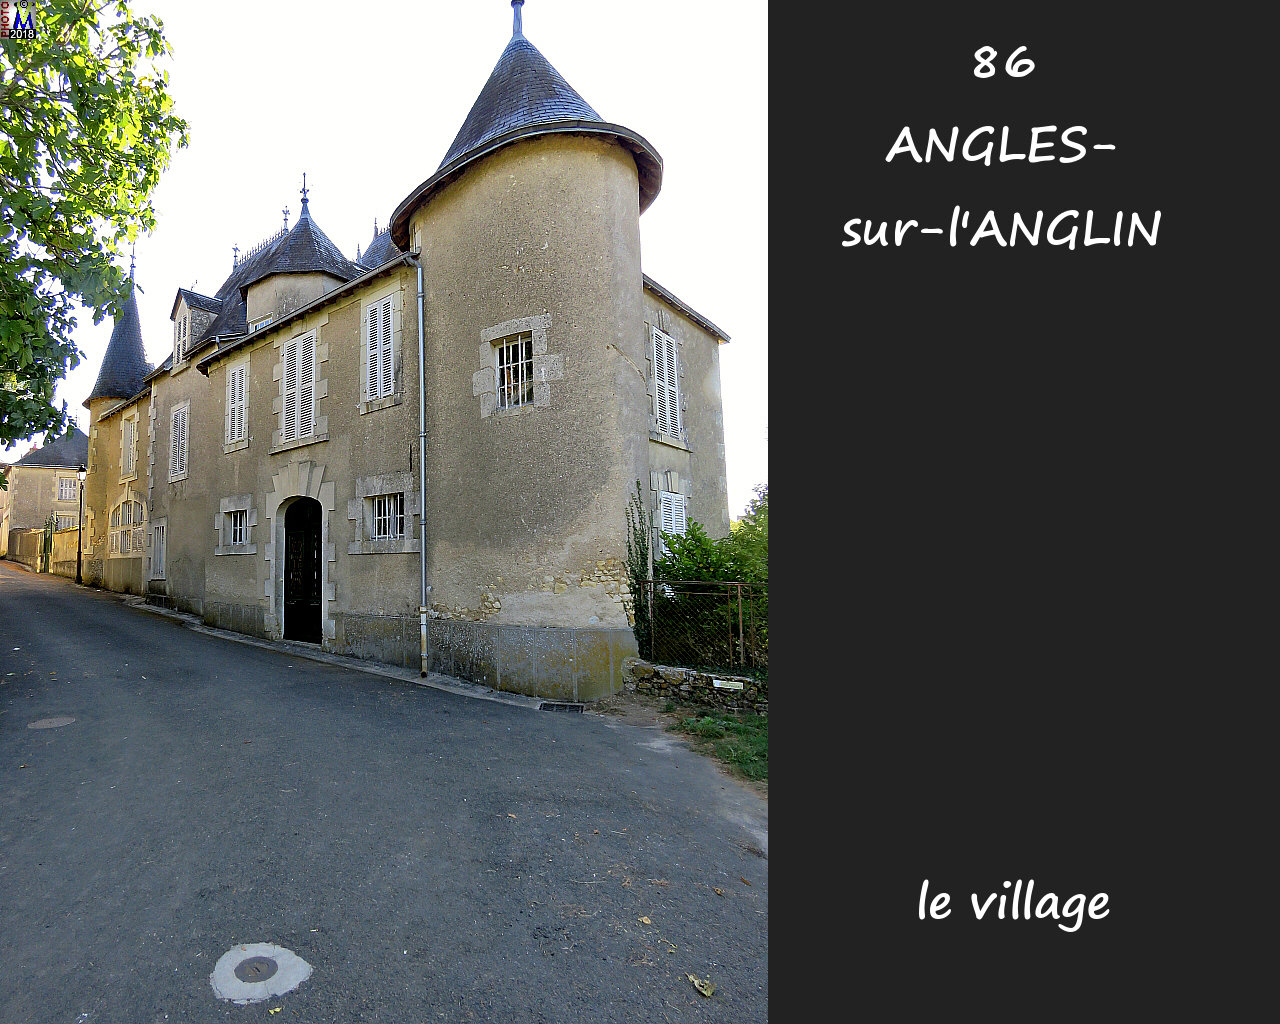 86ANGLES-S-ANGLIN_village_1032.jpg